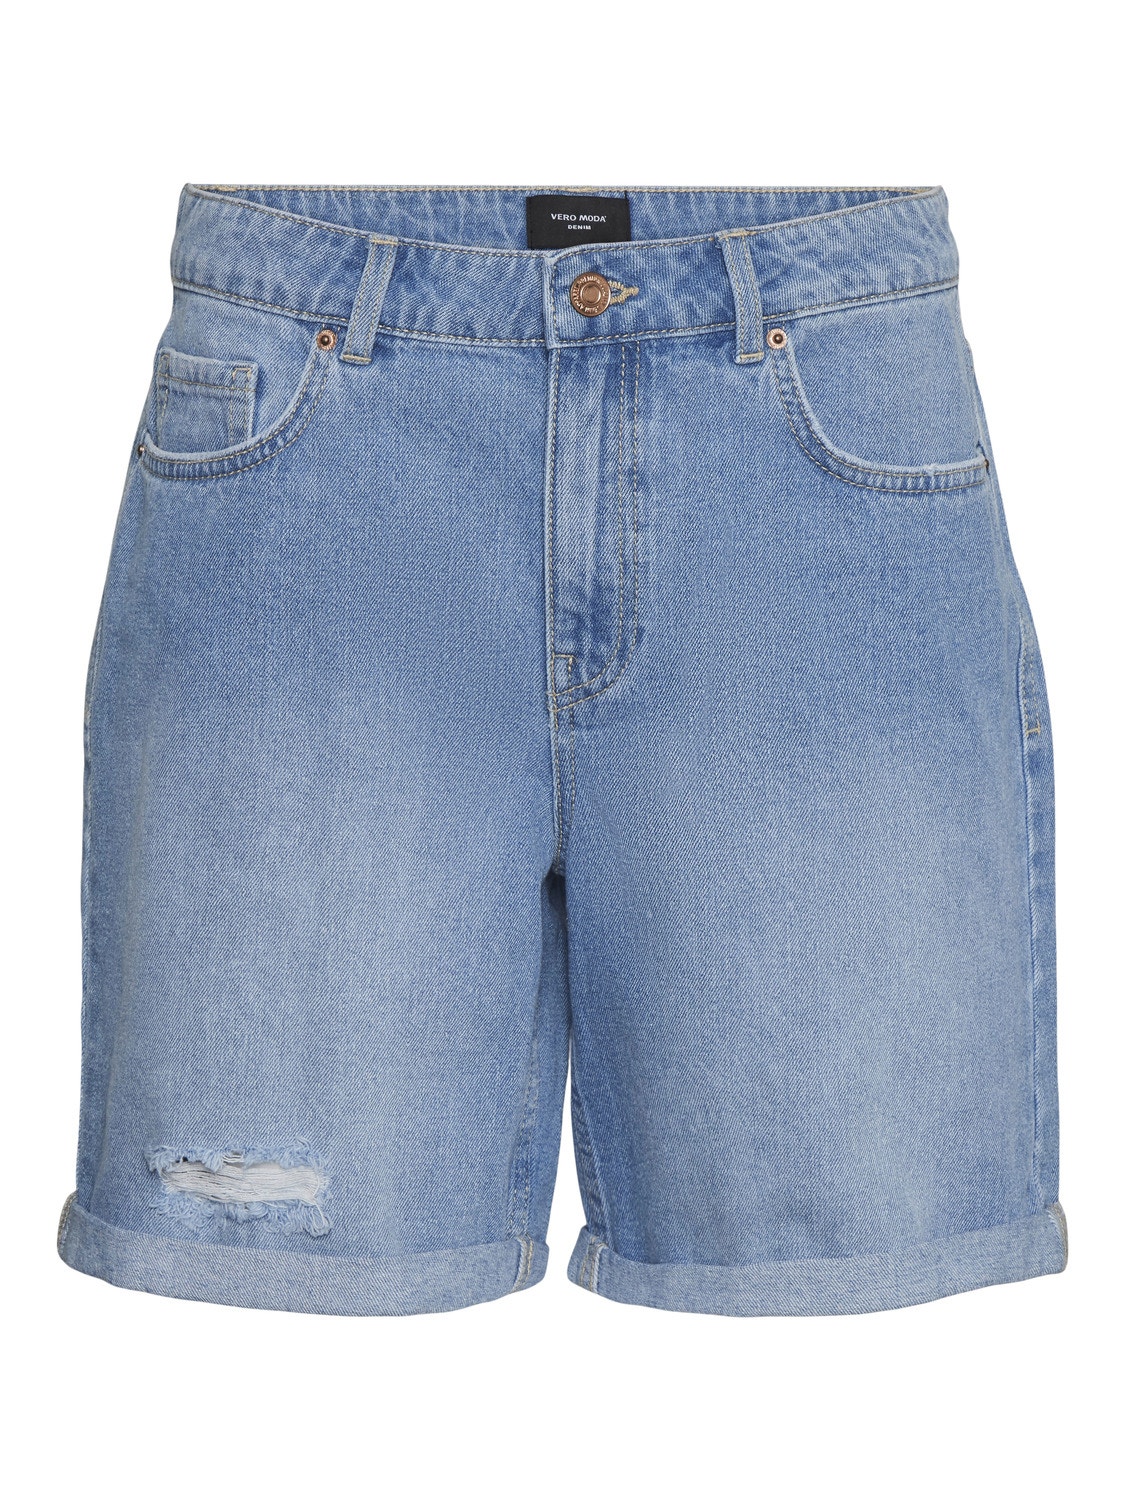 Vero Moda VMKARLIE Shorts -Light Blue Denim - 10286373